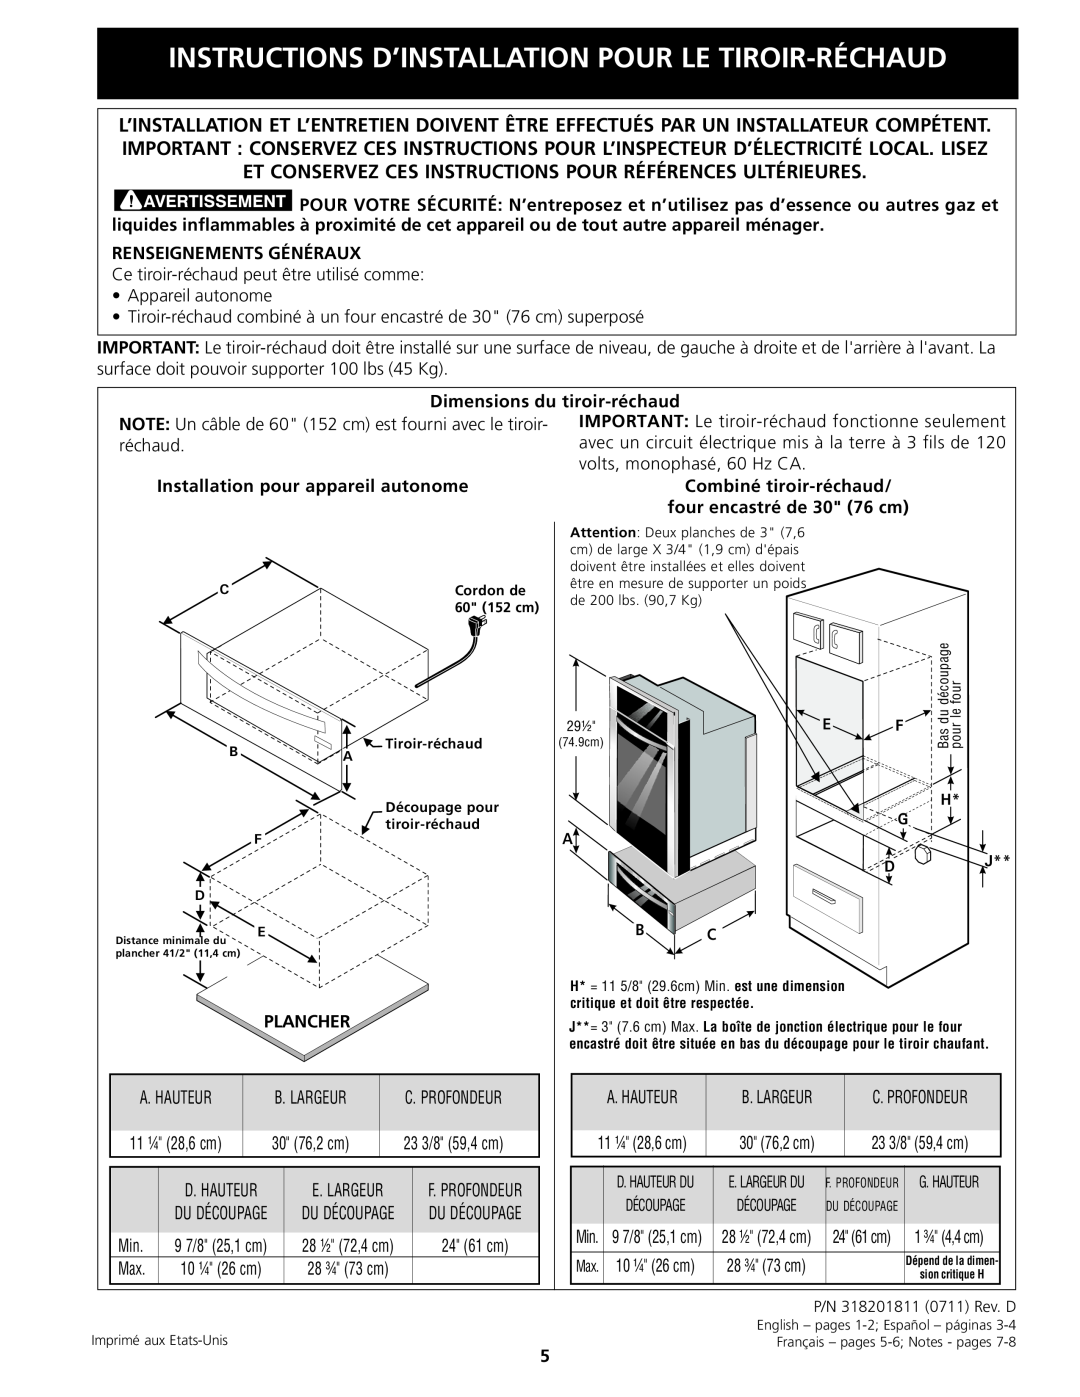 Electrolux 318201811 Instructions D’Installation Pour Le Tiroir-Réchaud, Renseignements Généraux, Dimensions du, Plancher 